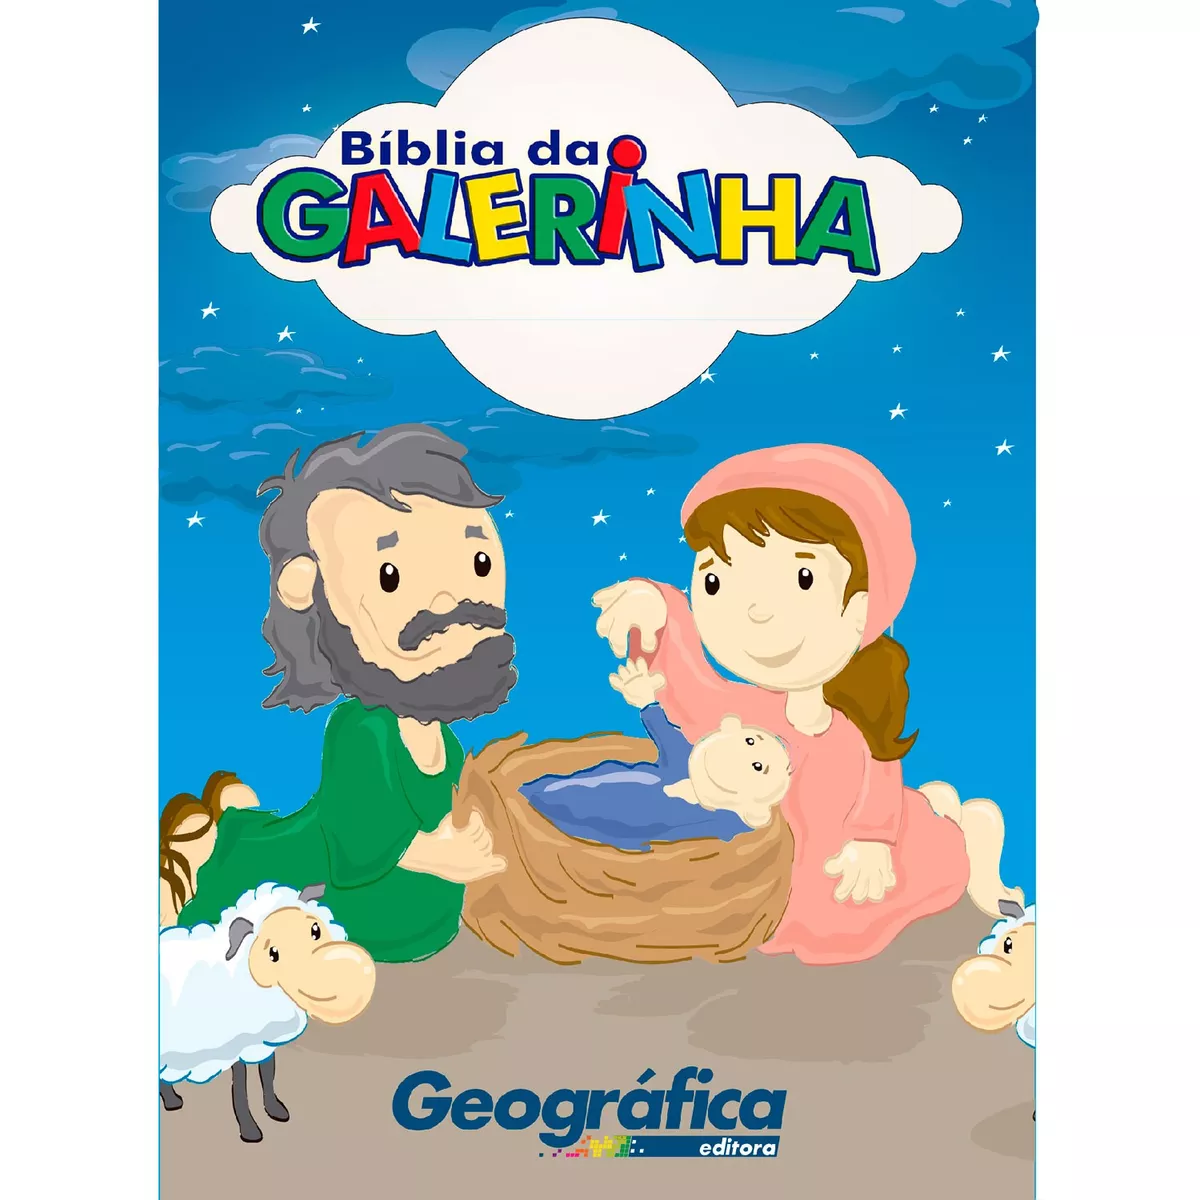 Bíblia Da Galerinha - Capa Brochura Impressa, De Fonseca, Marcelo. Geo-gráfica E Editora Ltda, Capa Mole Em Português, 2017